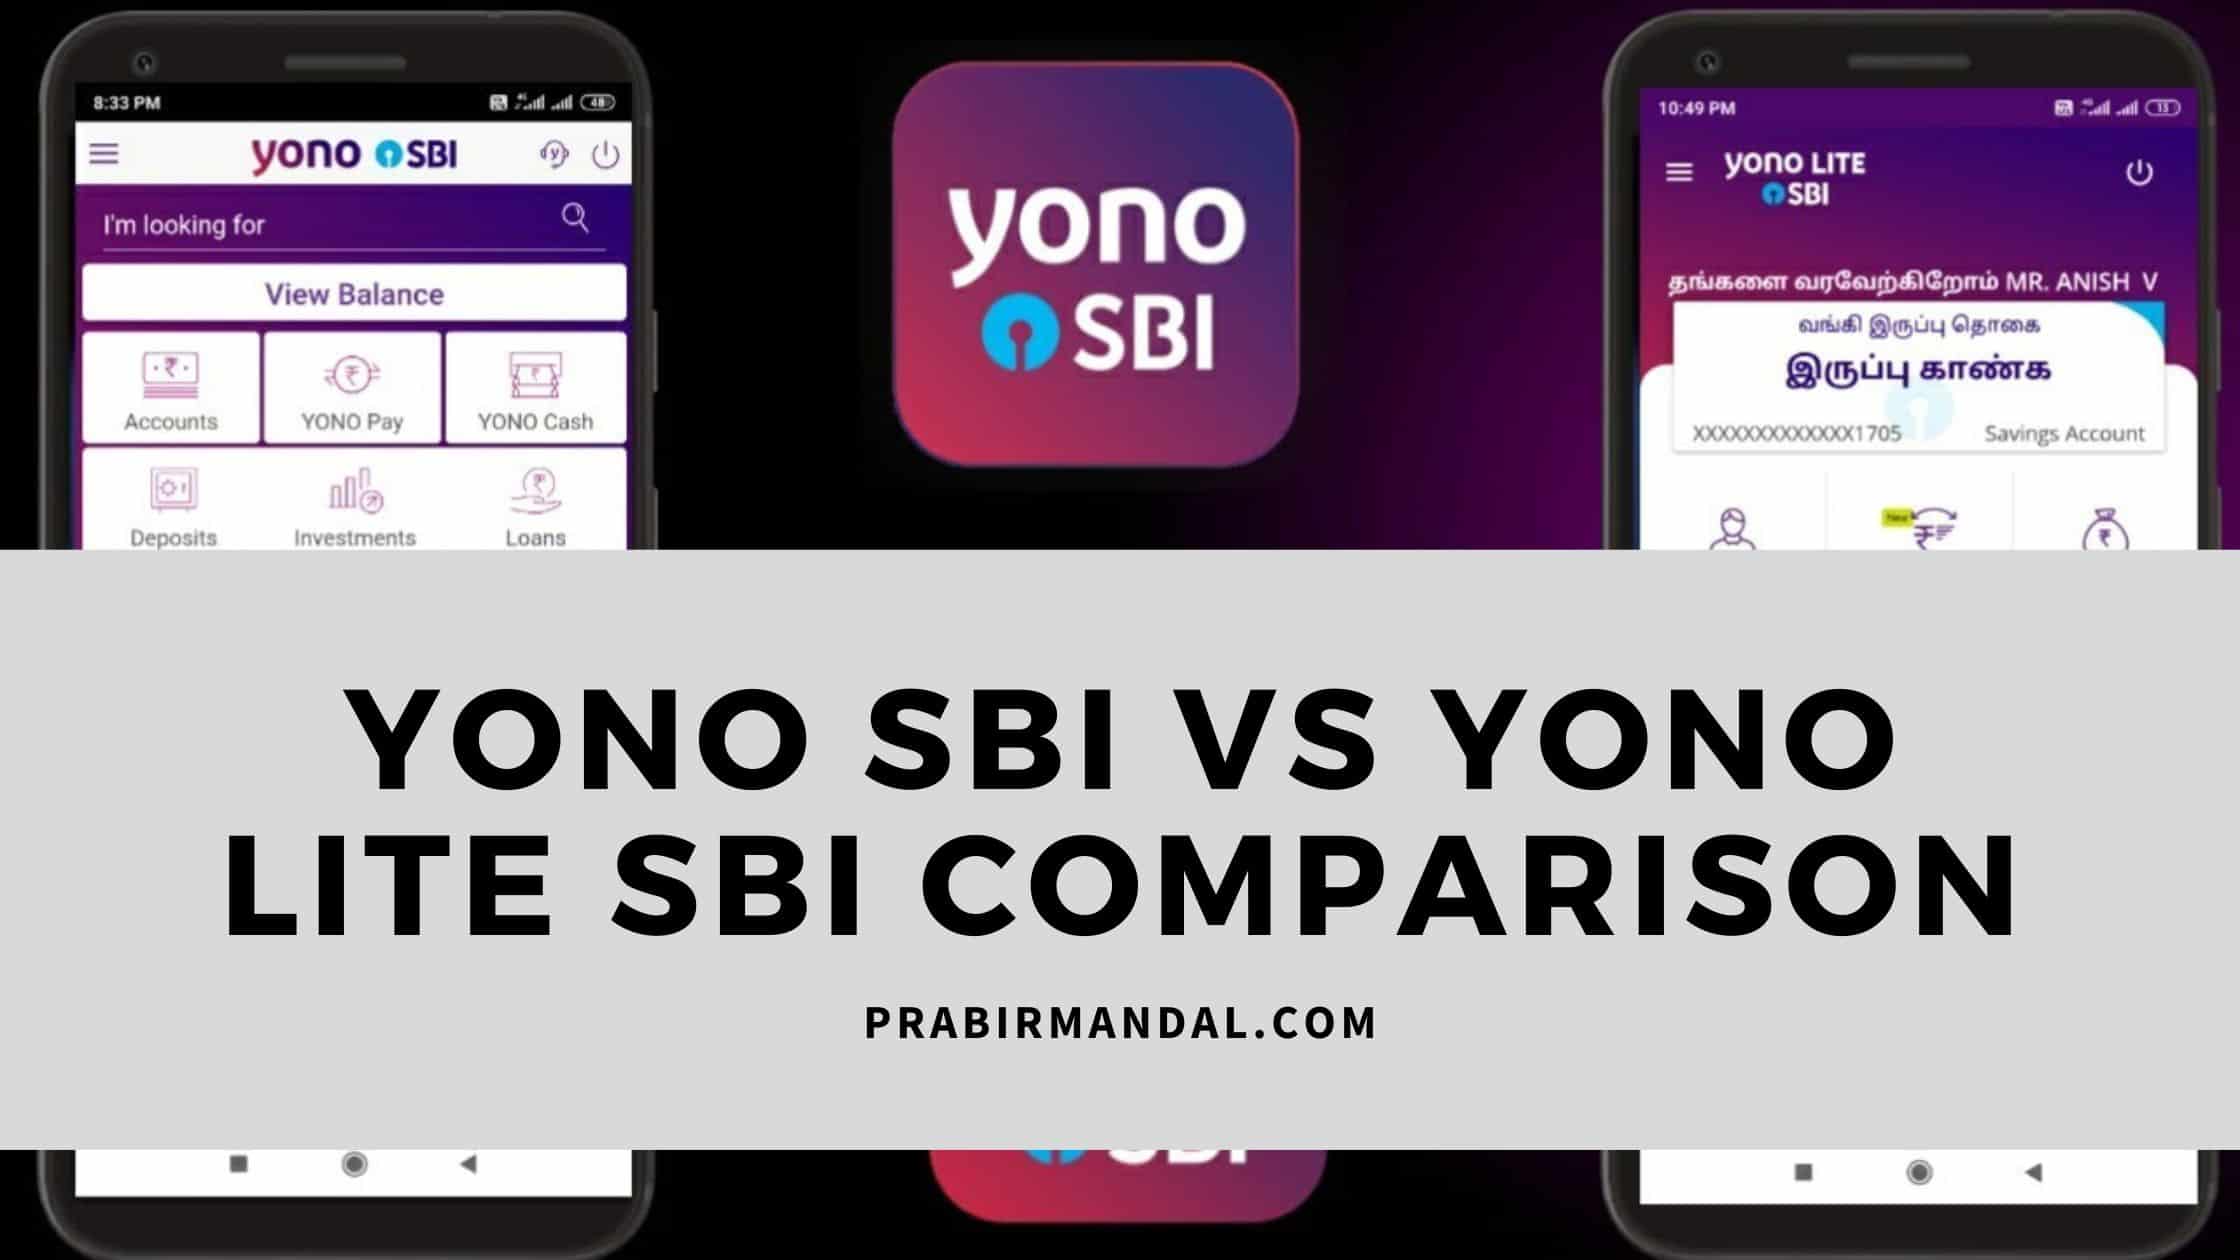 Yono SBI vs Yono Lite SBI Comparison